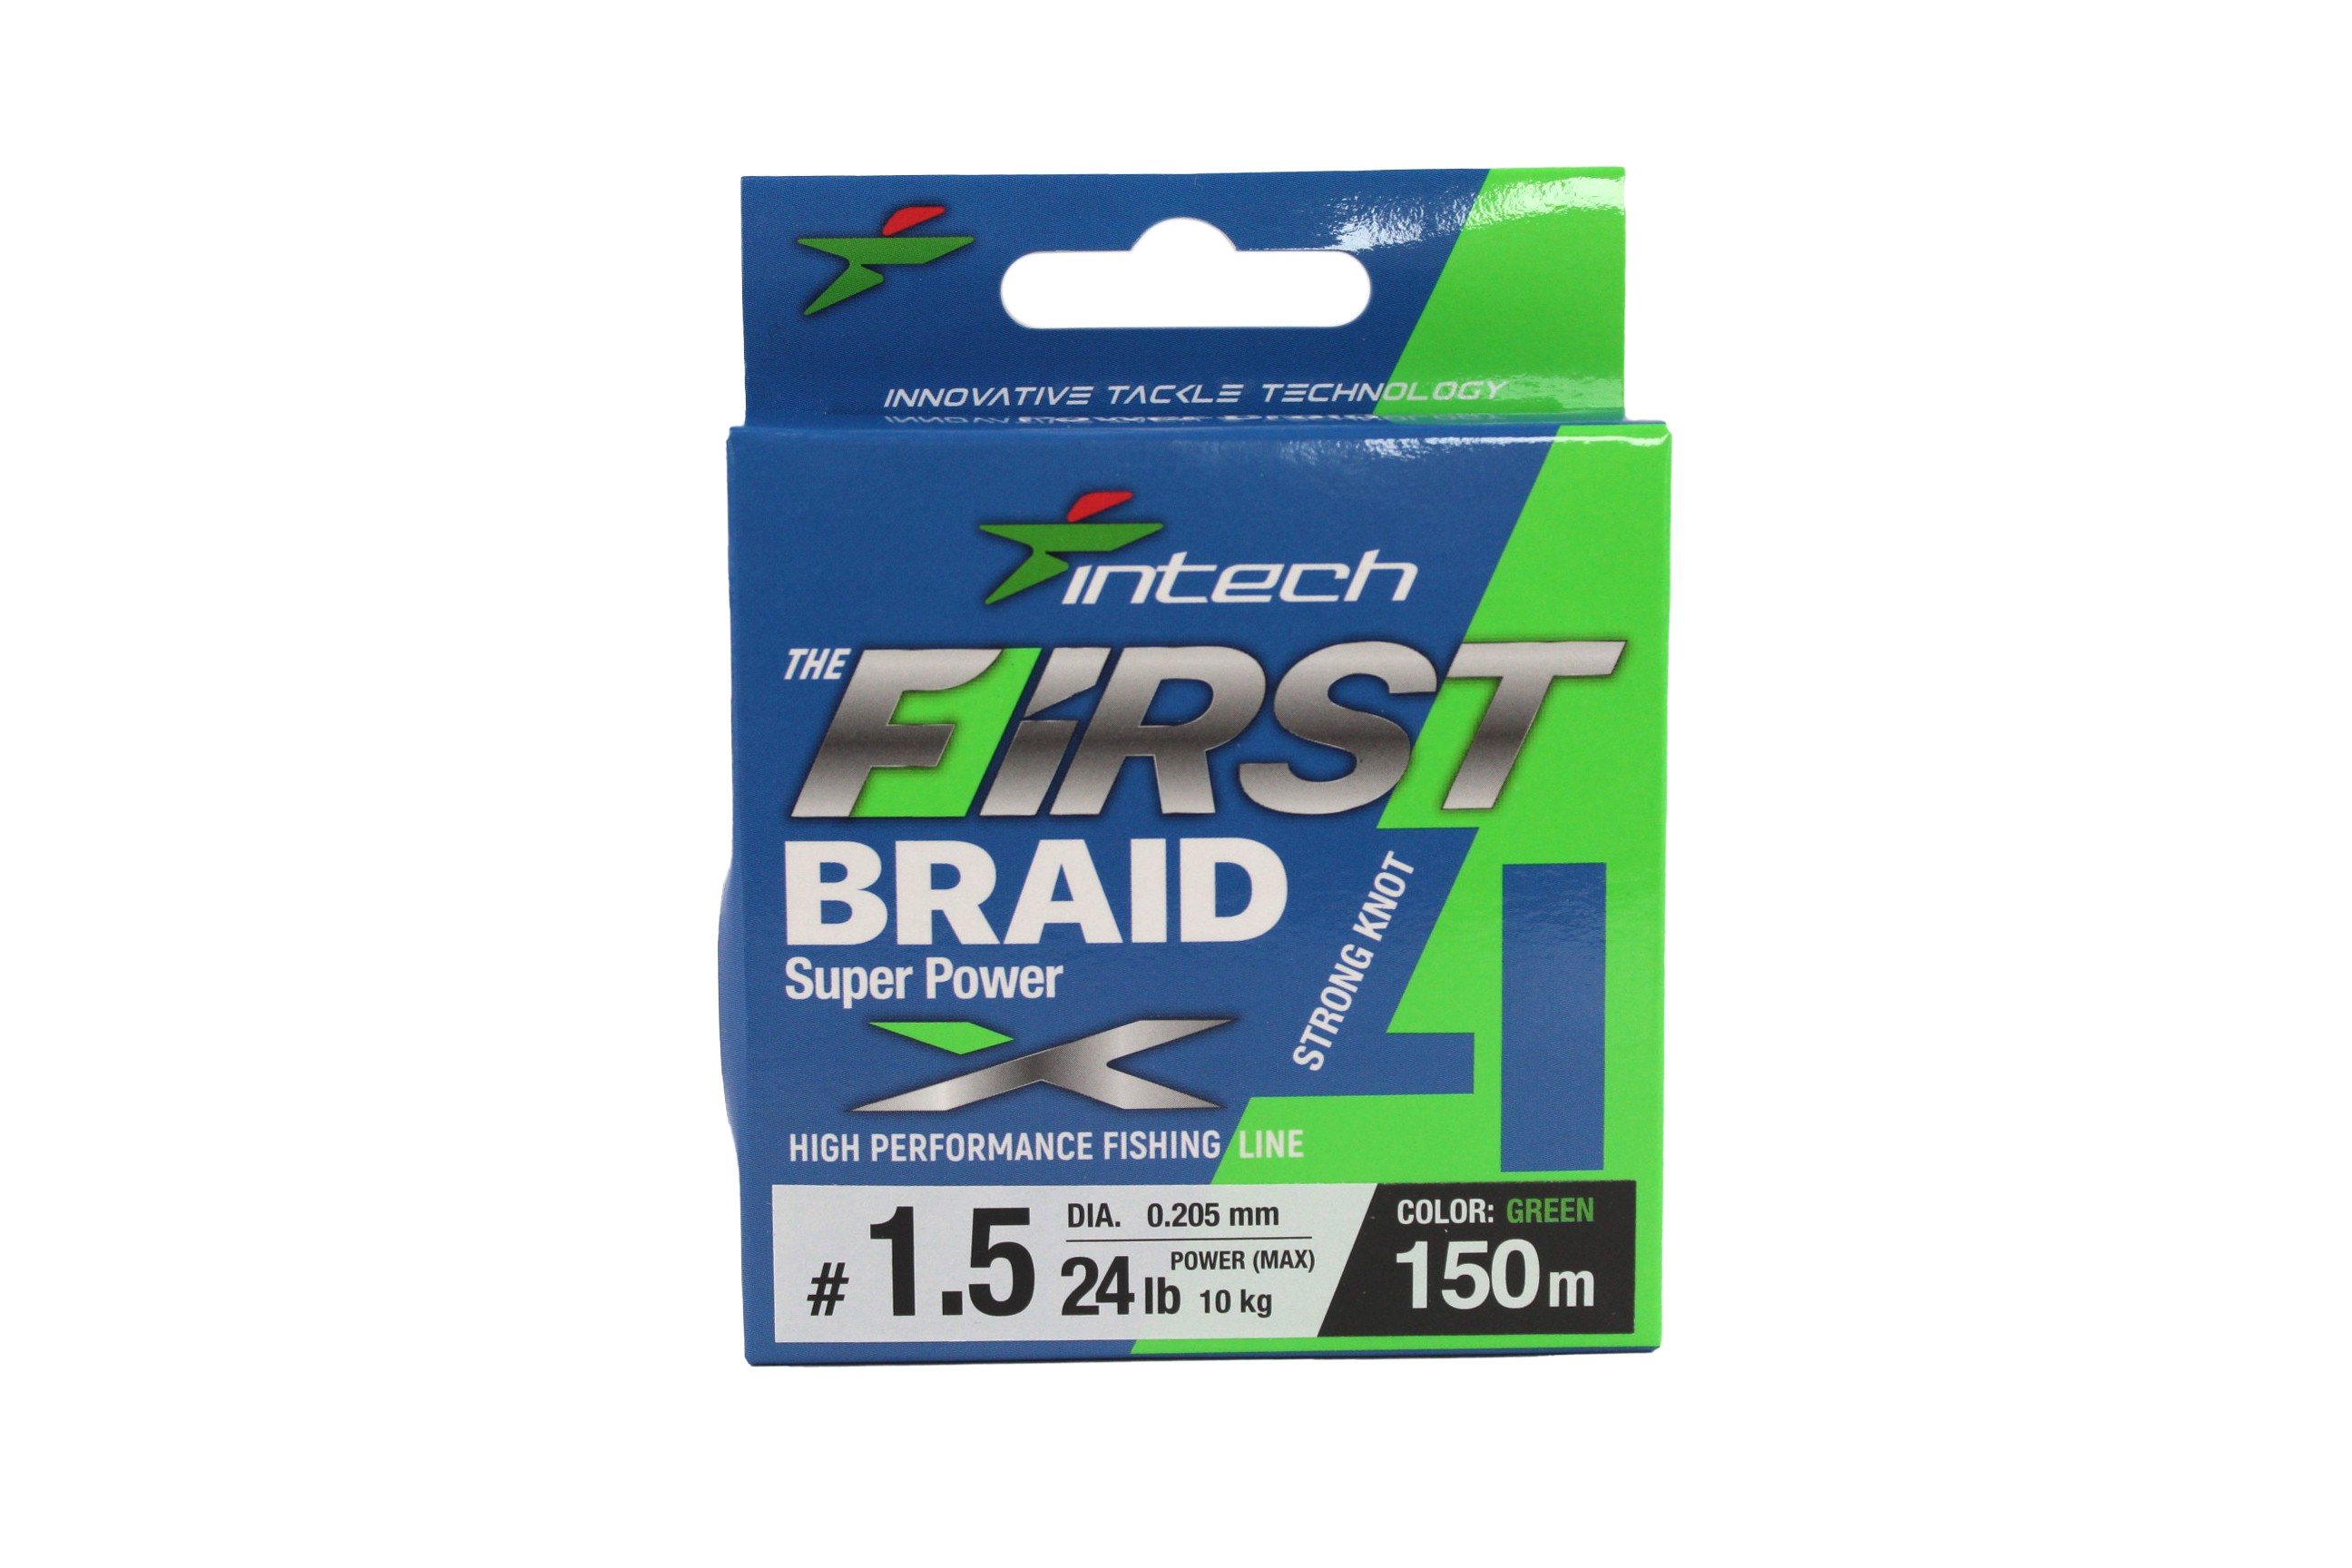 Шнур Intech First Braid X4 150м 1,5/0,205мм green - фото 1